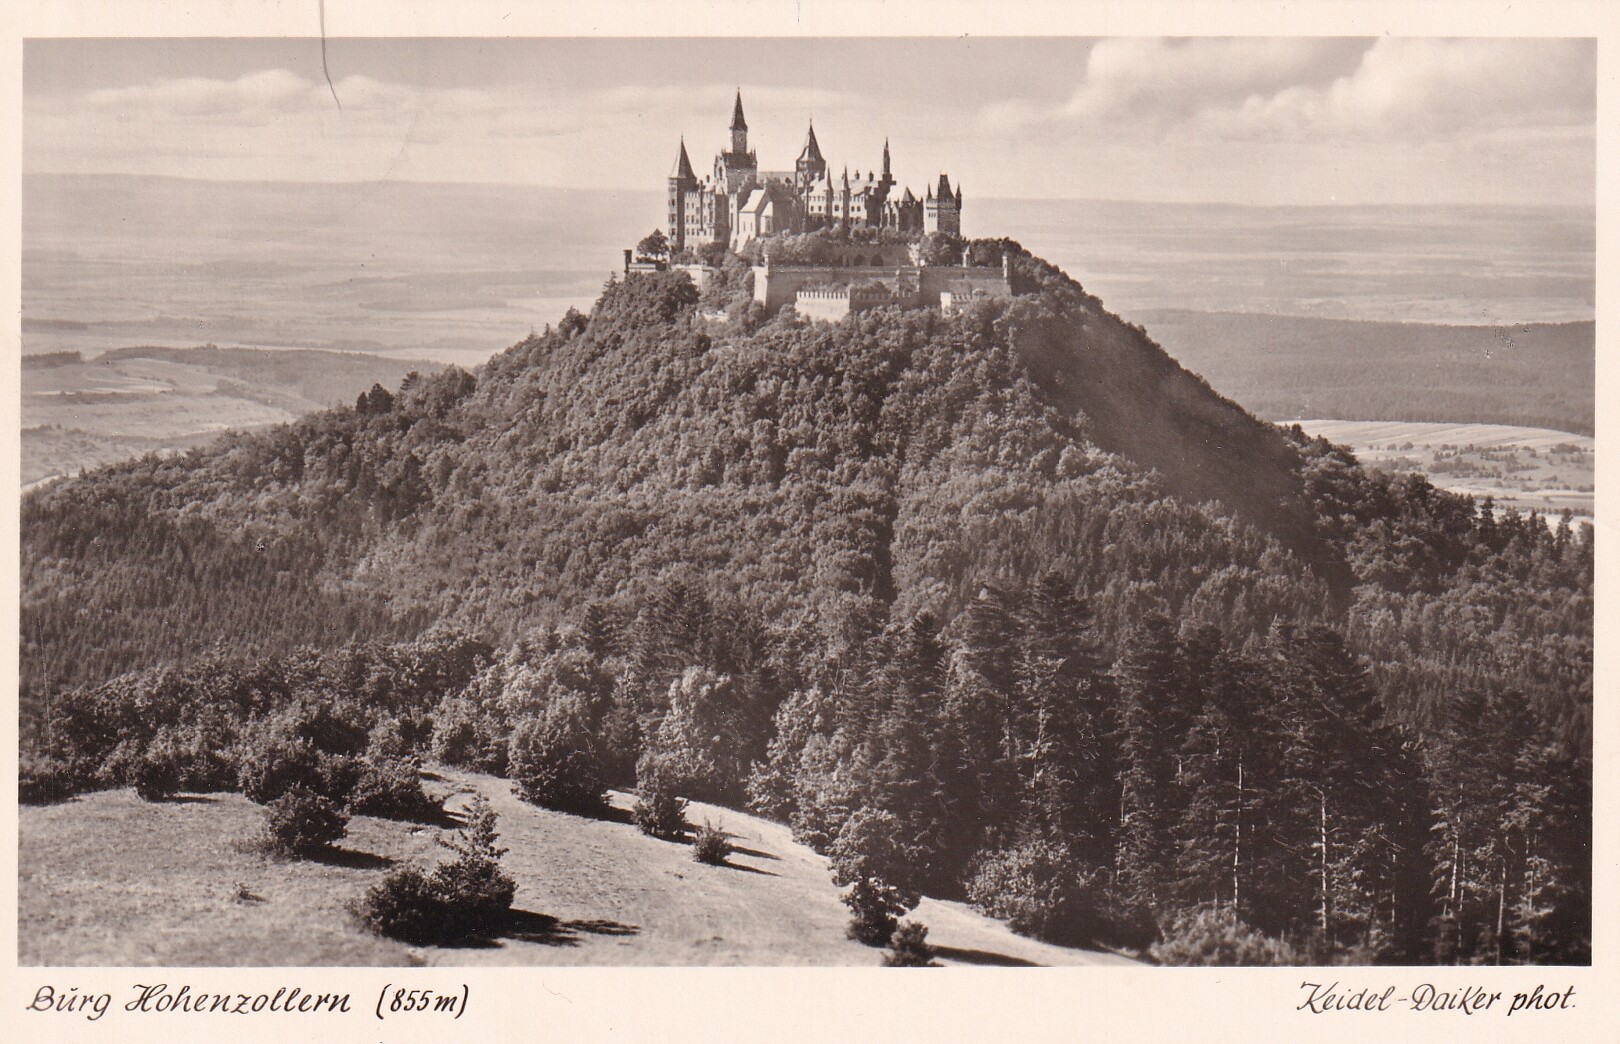 Bildpostkarte mit Foto der Burg Hohenzollern von Südwesten, um 1950 (Schloß Wernigerode GmbH RR-F)